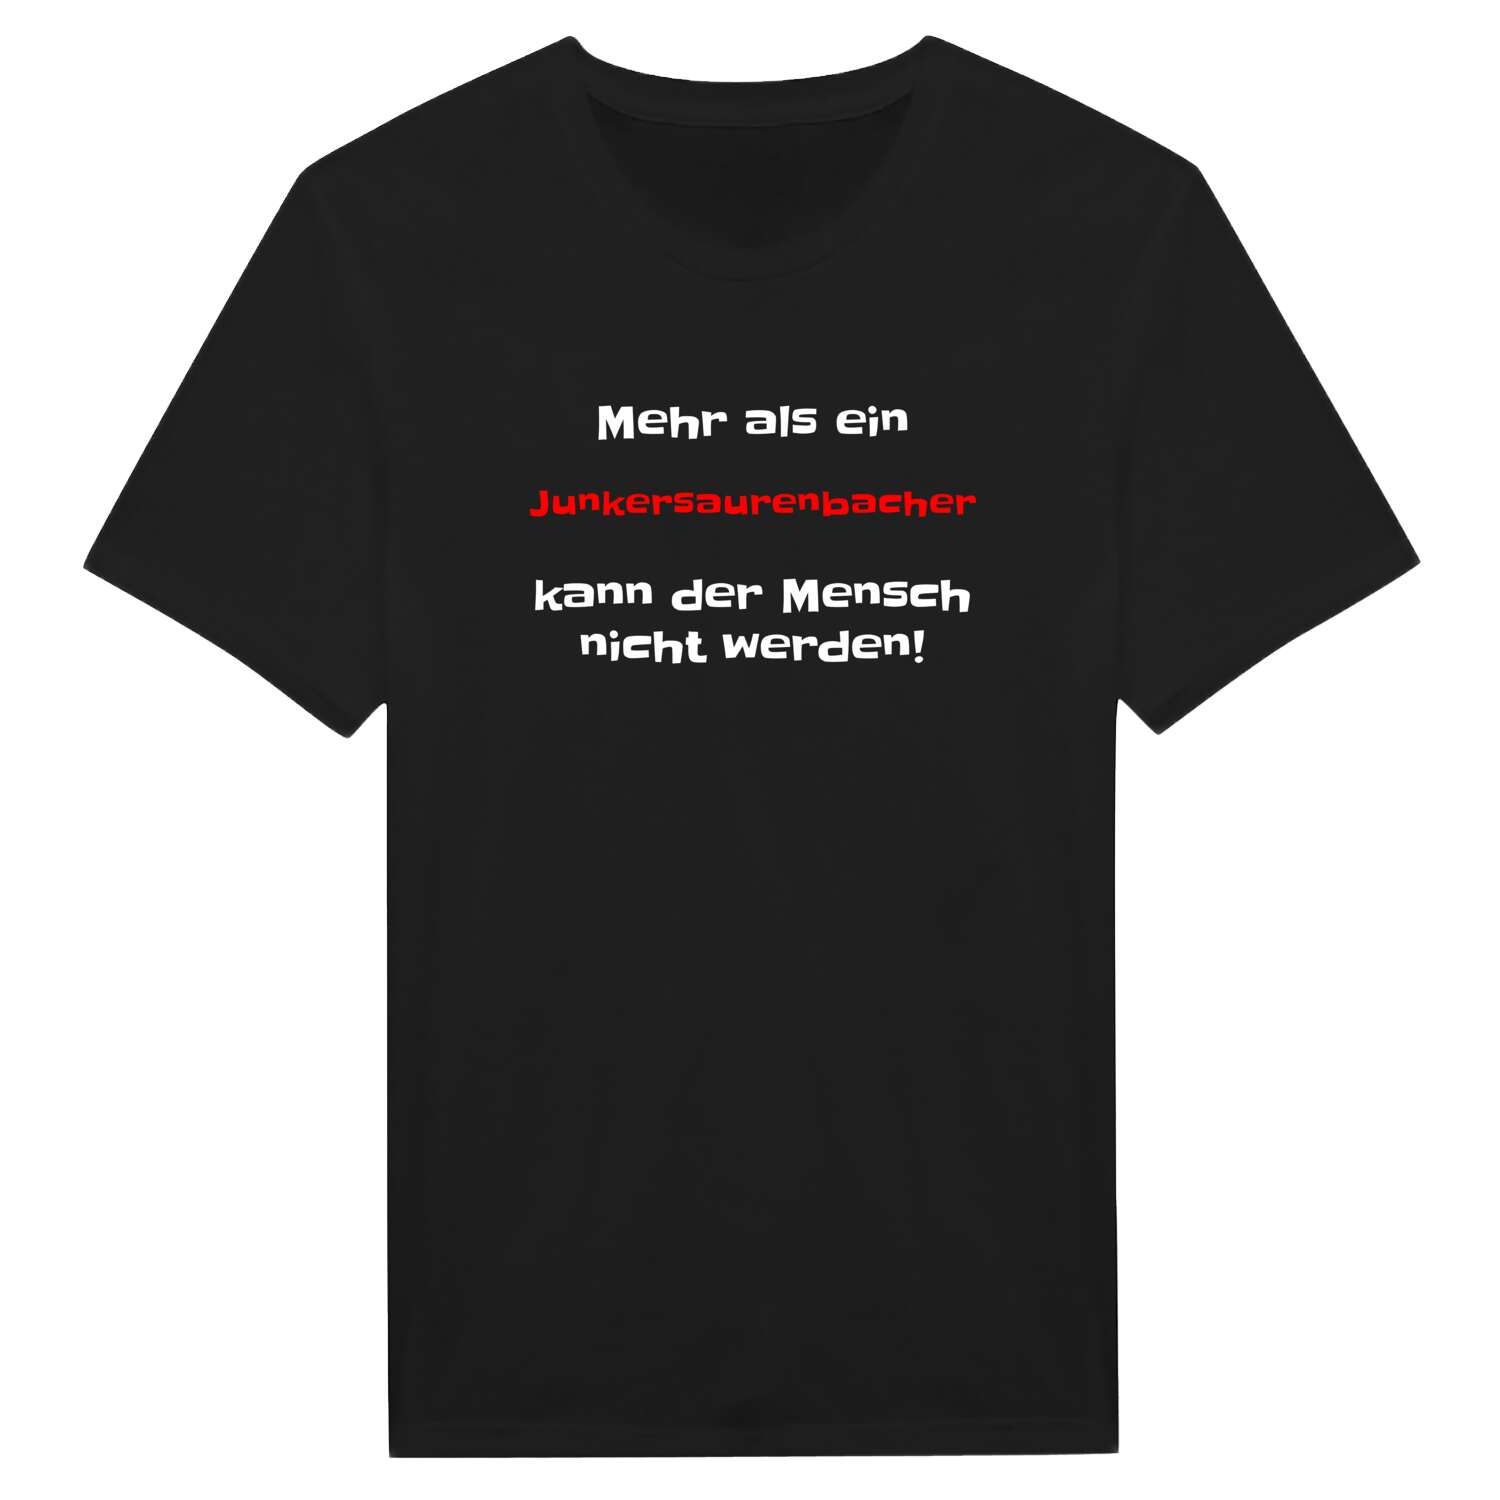 Junkersaurenbach T-Shirt »Mehr als ein«